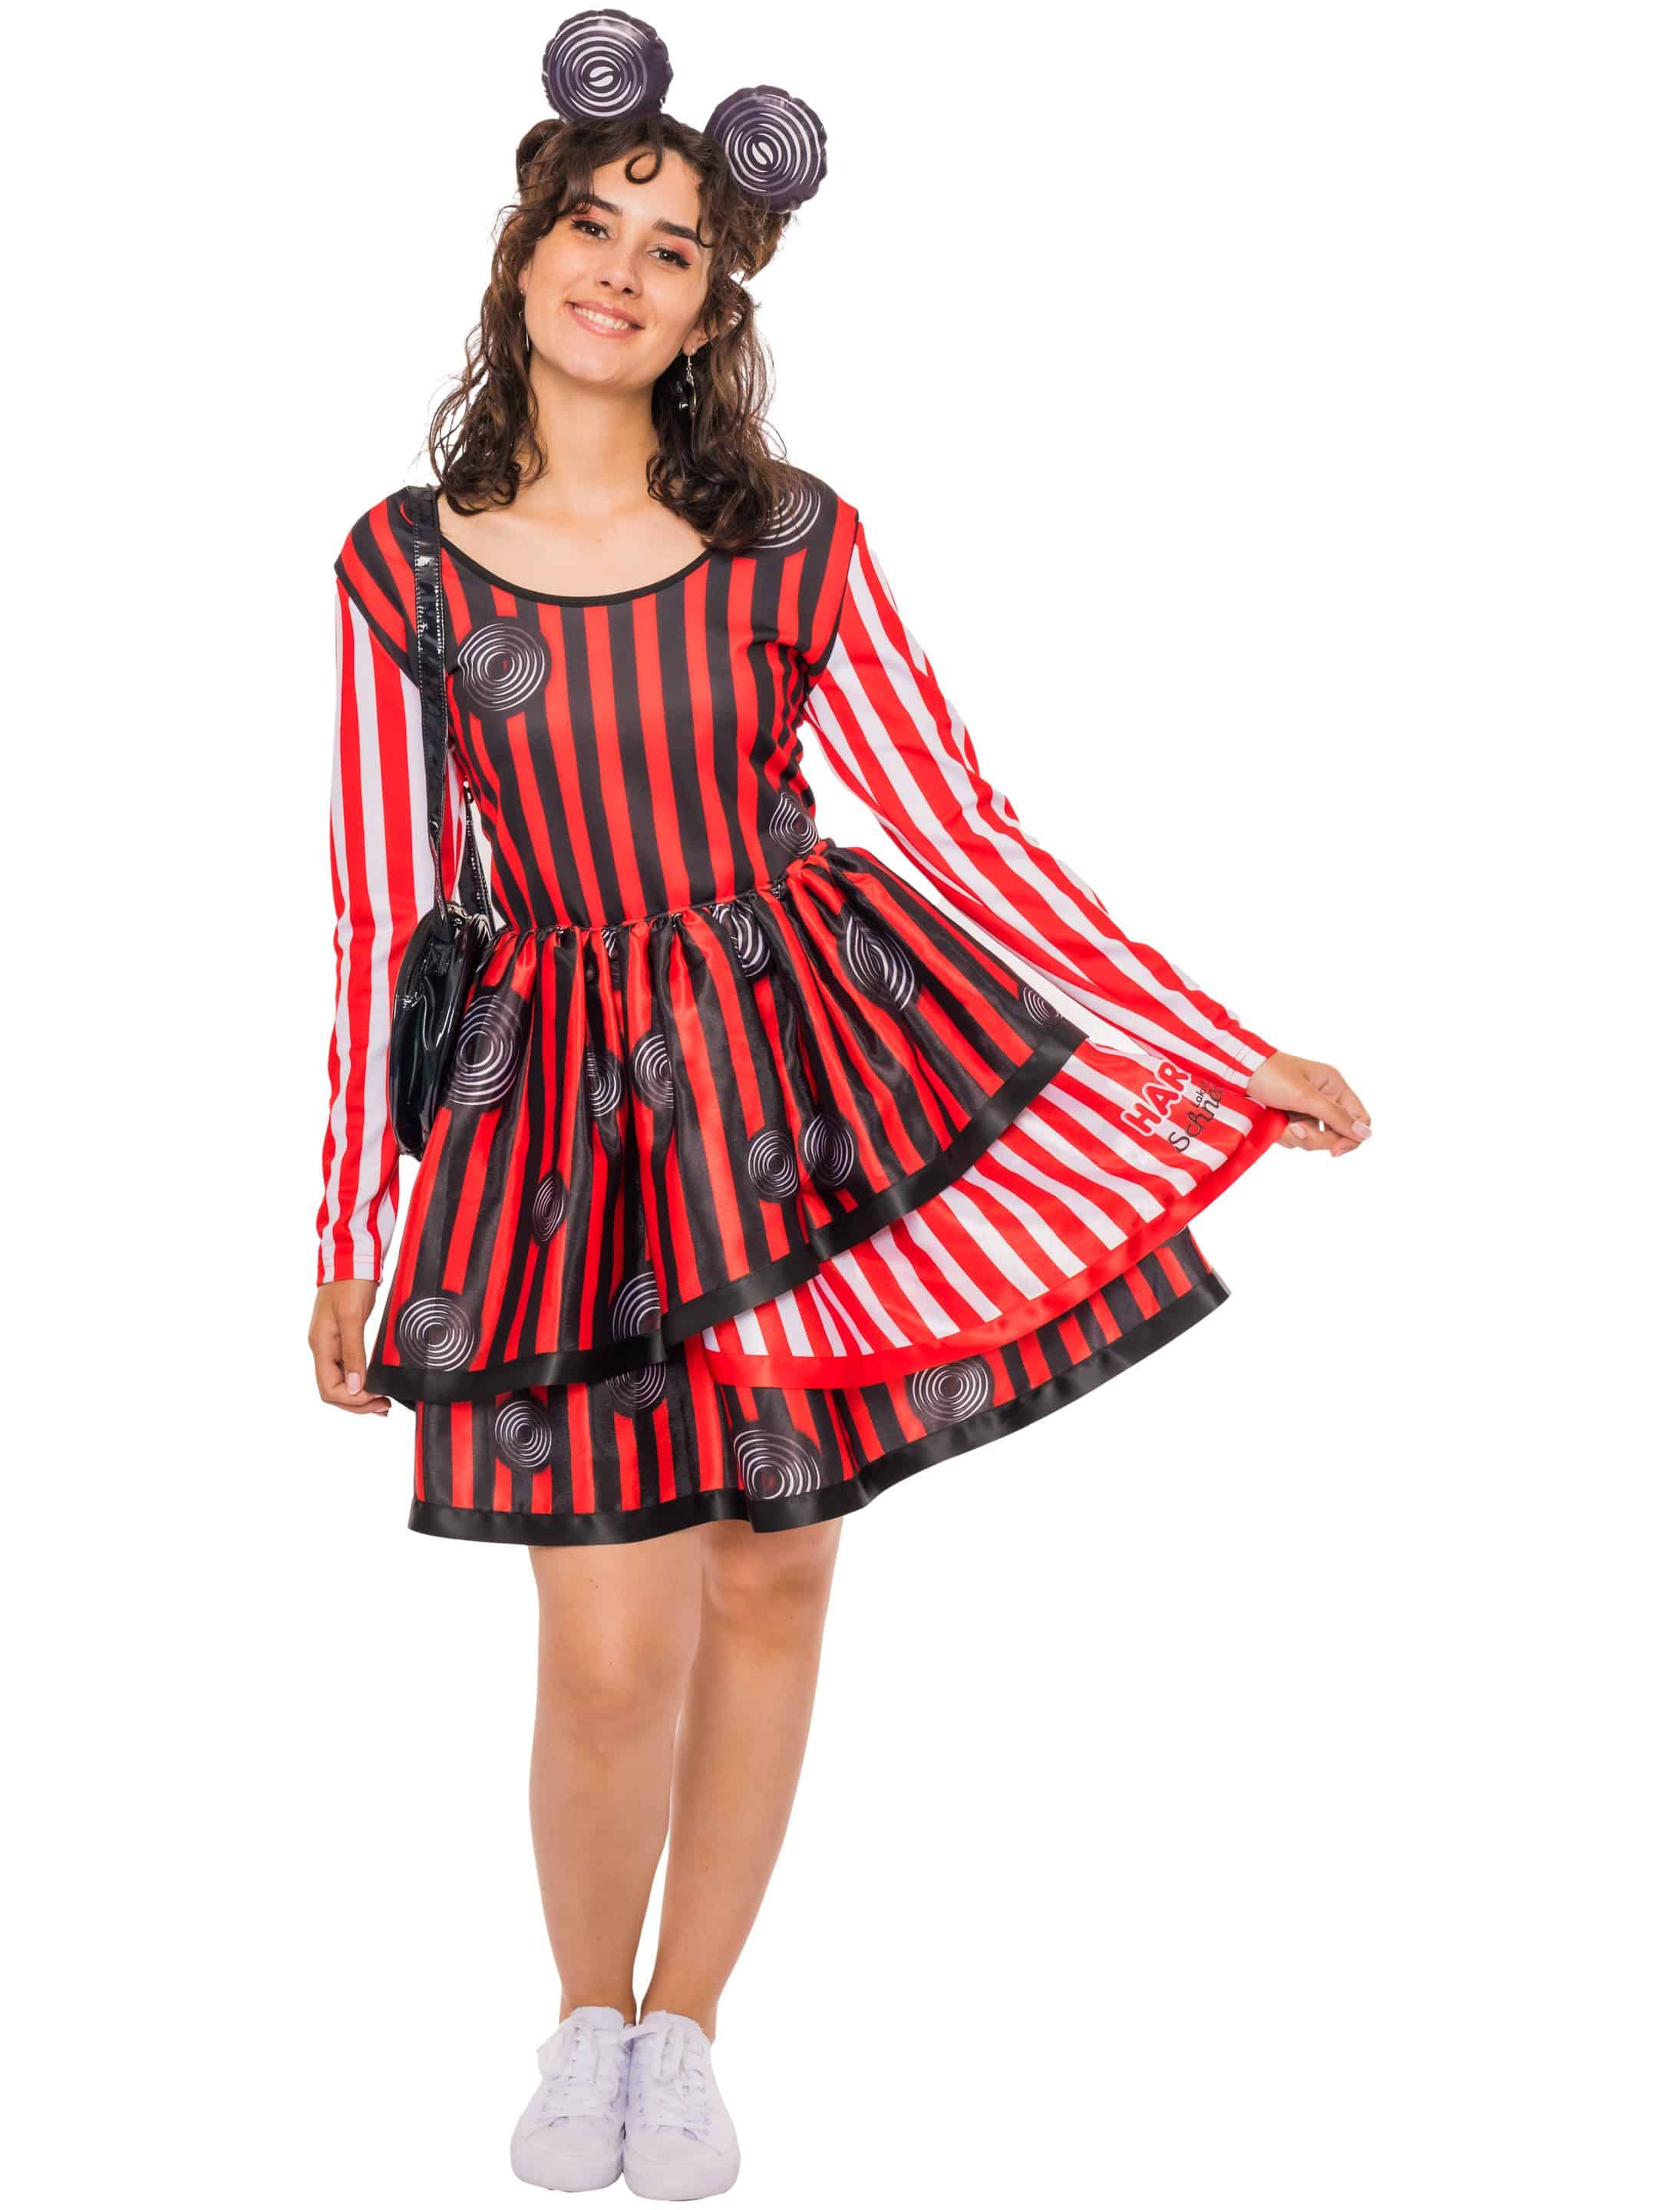 Kleid HARIBO Lakritz Schnecken Damen schwarz/weiß/rot S